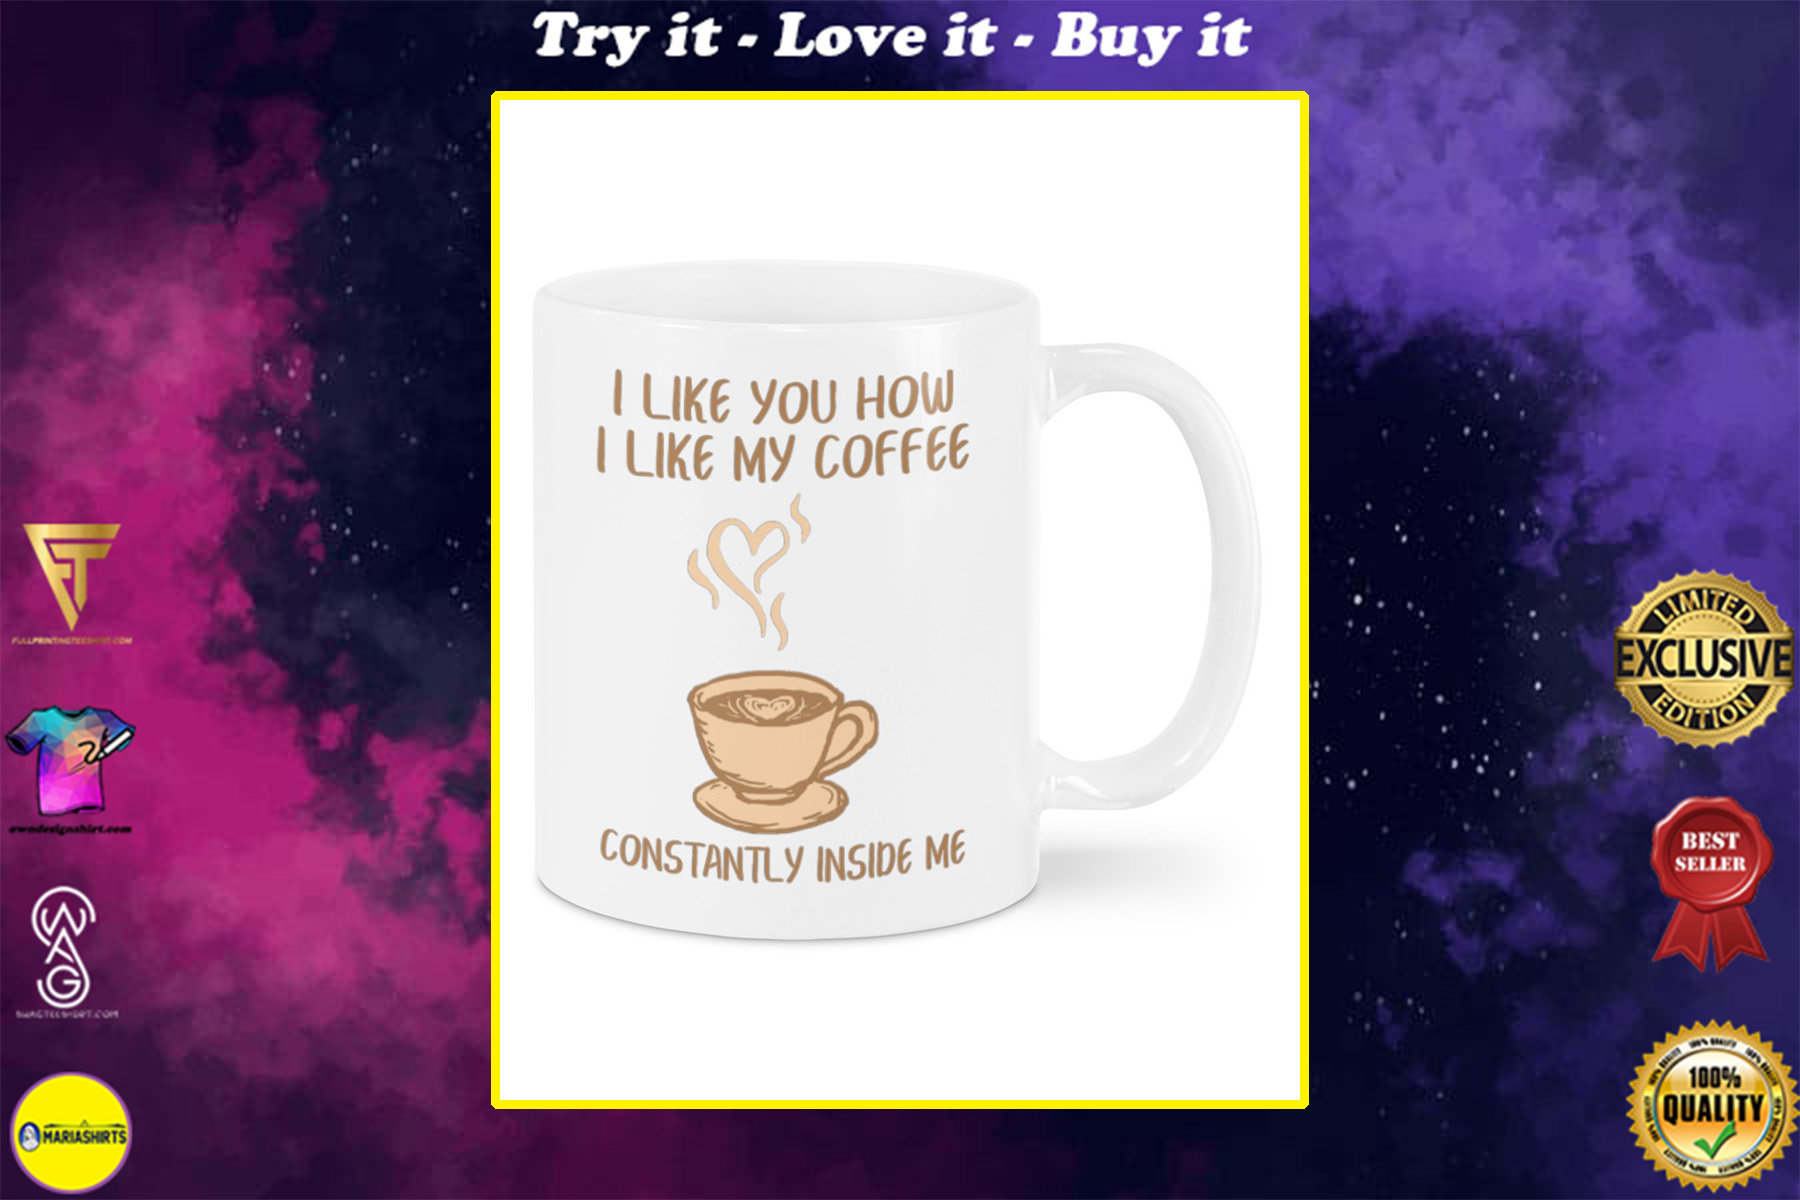 i like you how i like my coffee constantly inside me happy valentine's day mug